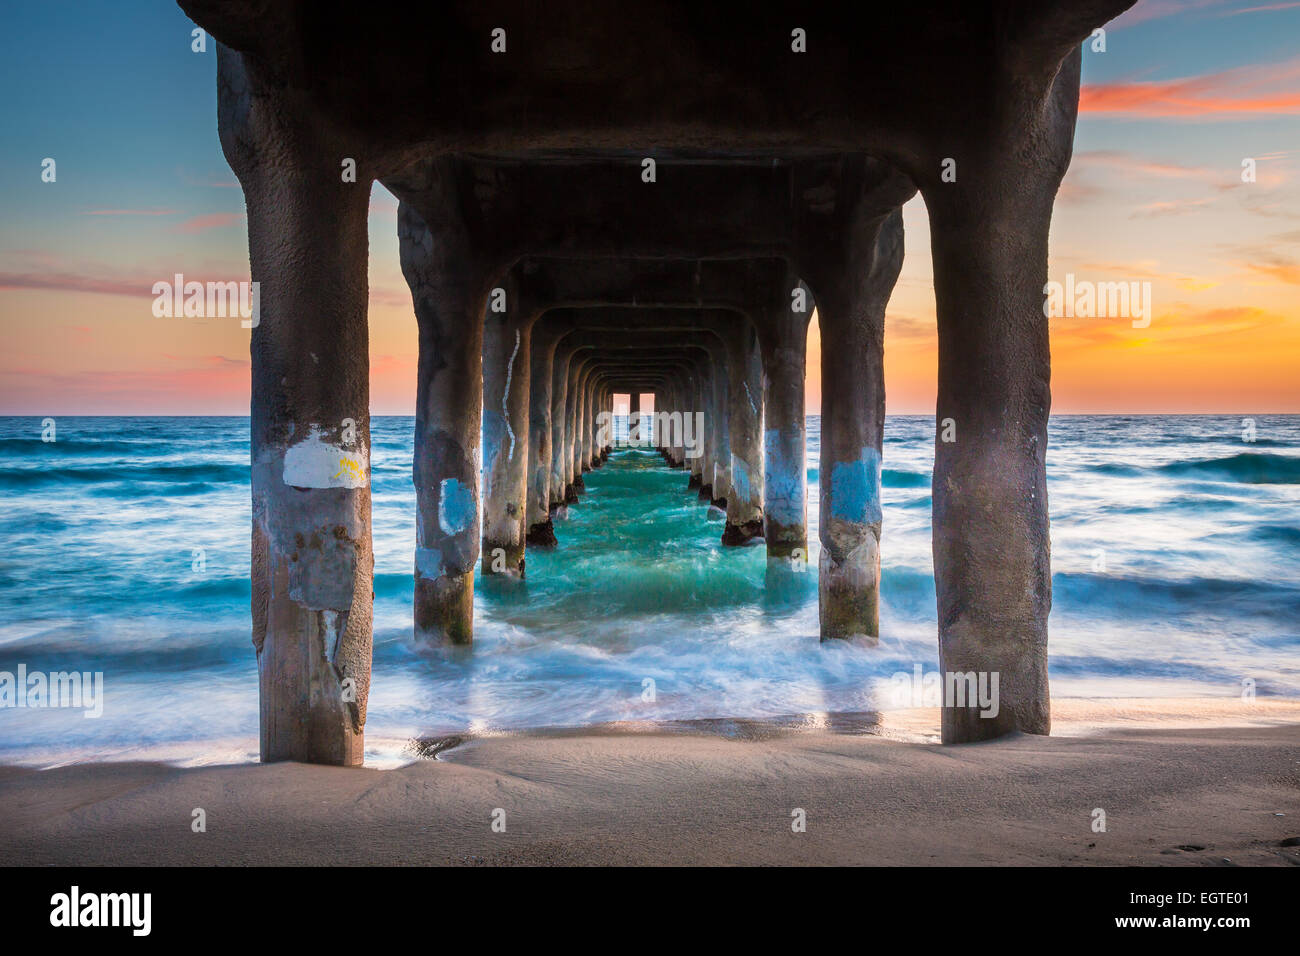 Le Manhattan Beach Pier est un quai situé à Manhattan Beach, en Californie, sur la côte de l'océan Pacifique. Banque D'Images